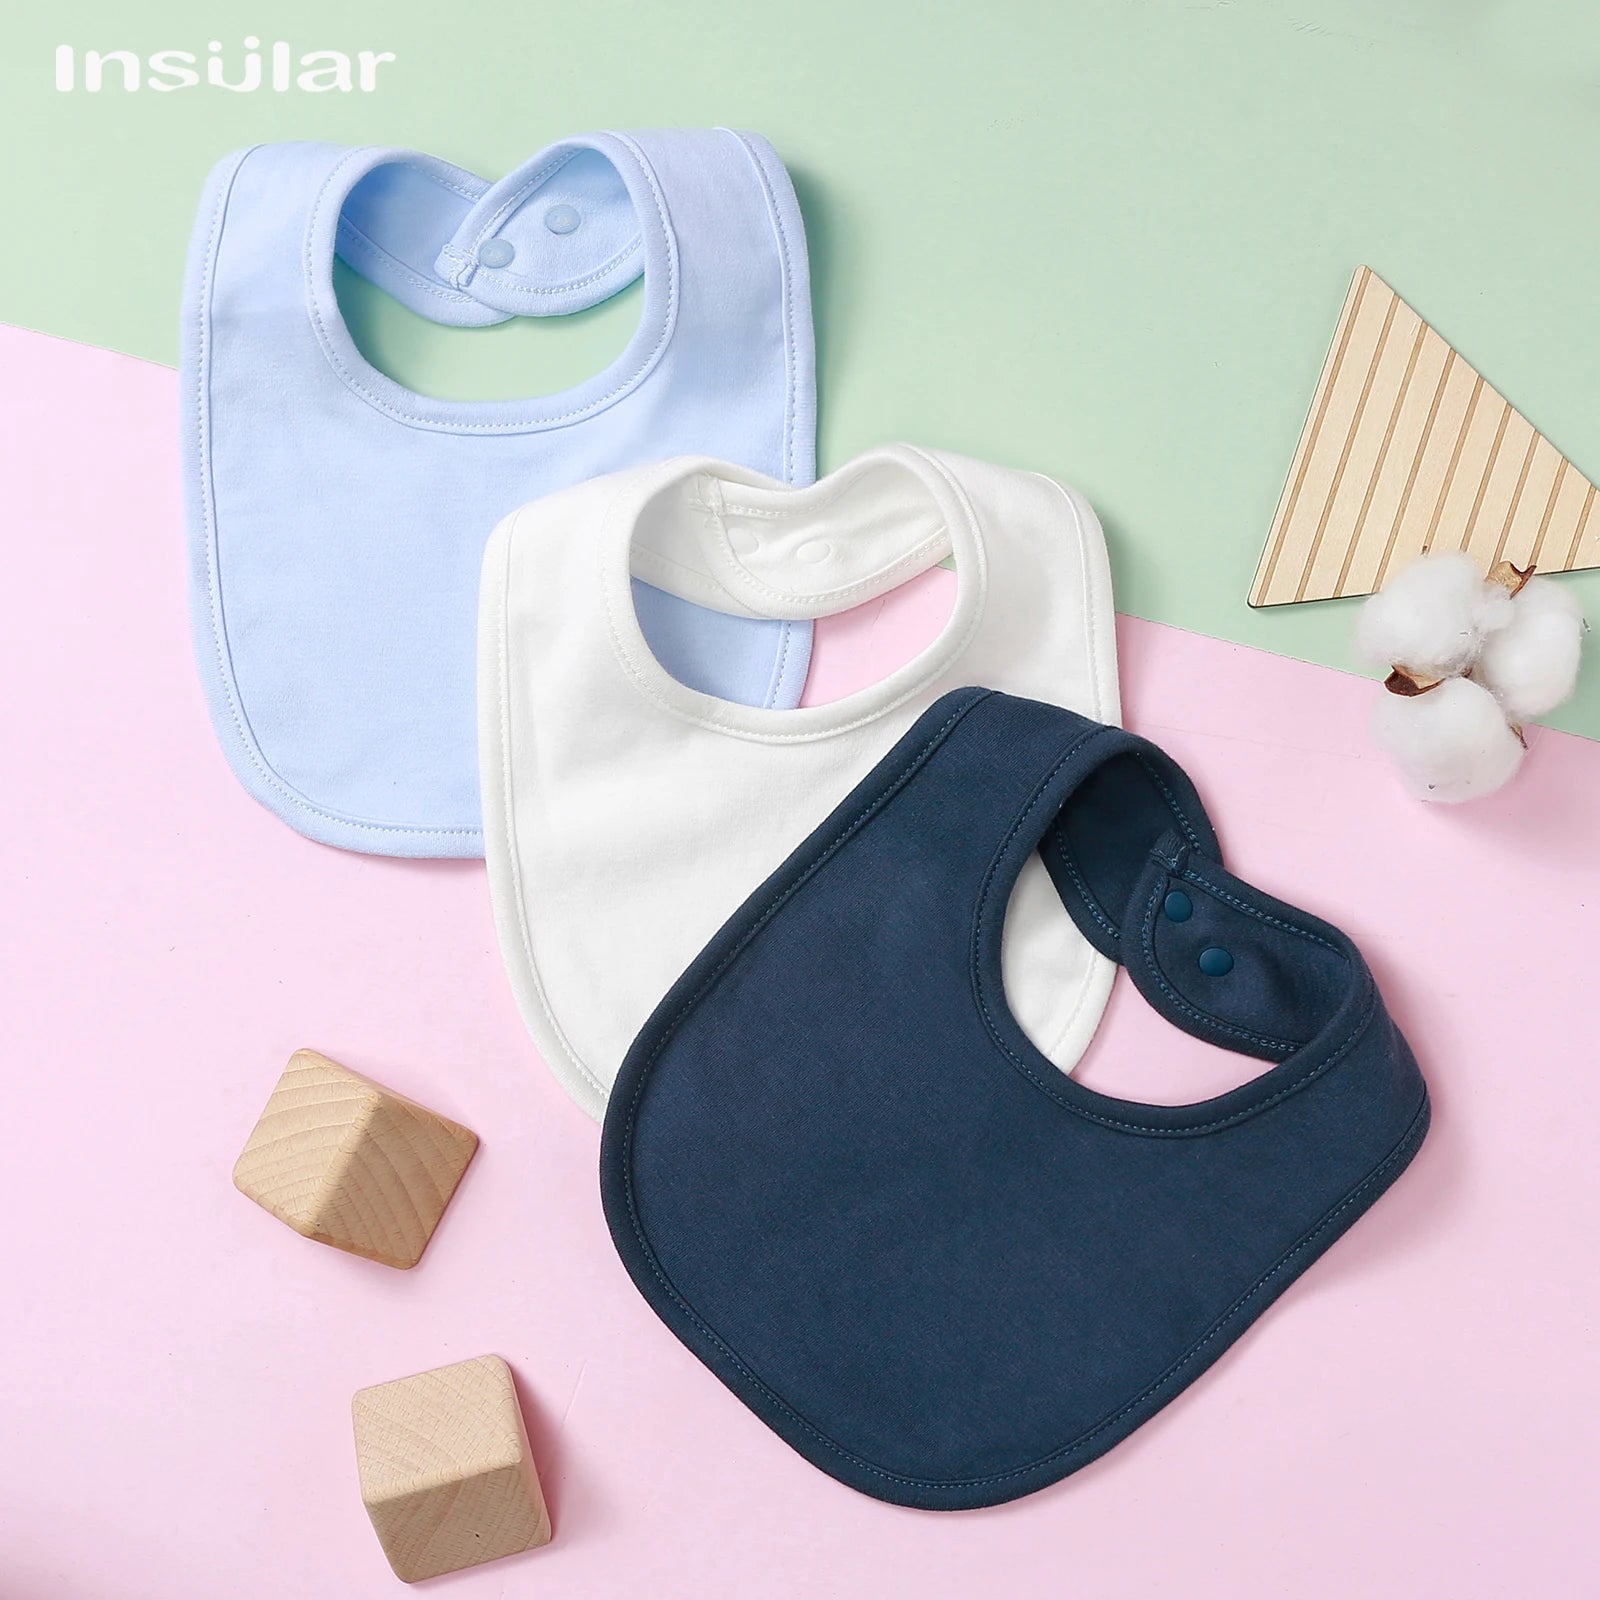 Les essentiels de bébé dans un agencement minimaliste : des bavoirs BABY PREMA Bavoir Bébé en Coton Bio bleu pastel, blanc et marine associés à des blocs de bois et un brin de coton sur un bicolore rose et bleu.